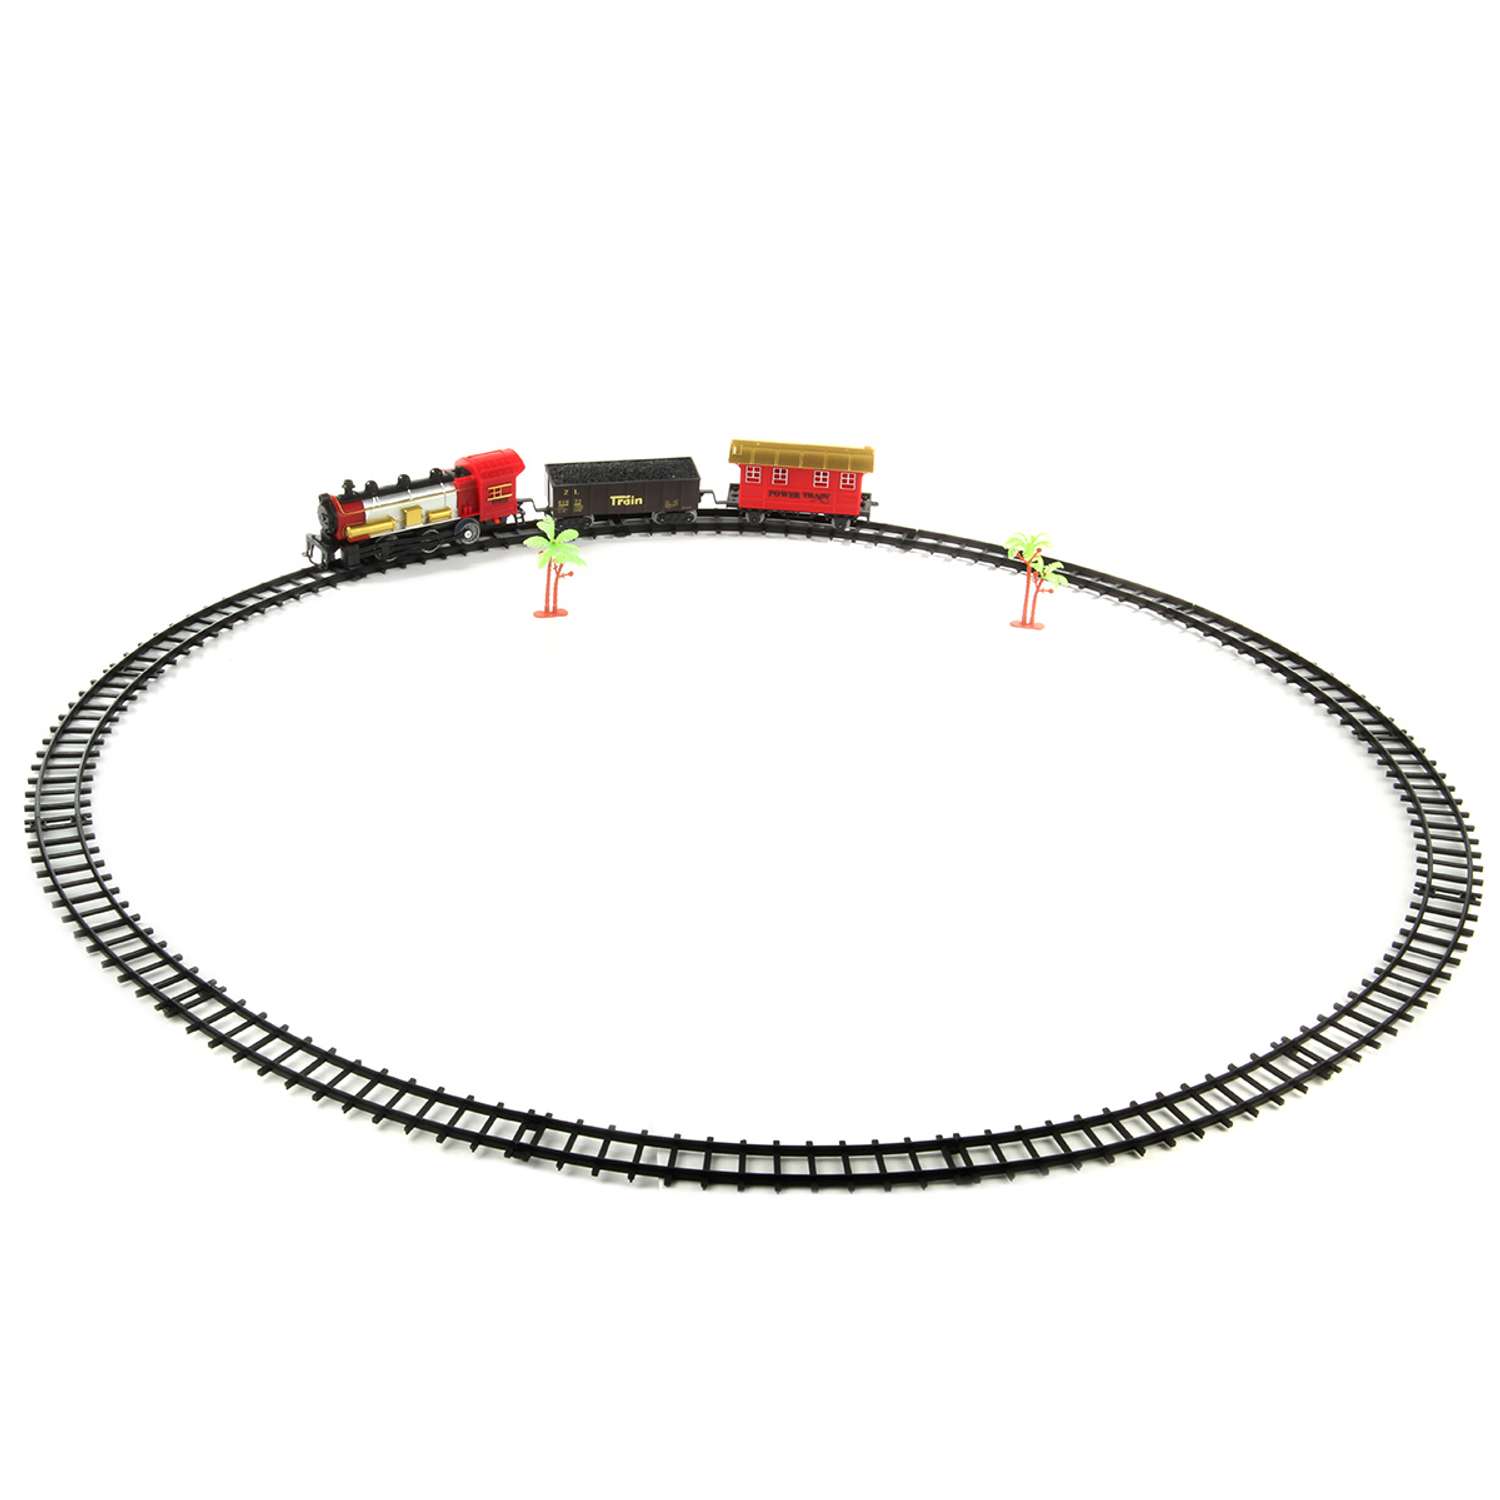 Железная дорога Veld Co Праздничный поезд интерактивный со звуковыми и световыми сигналами 17 предметов 126524 - фото 1